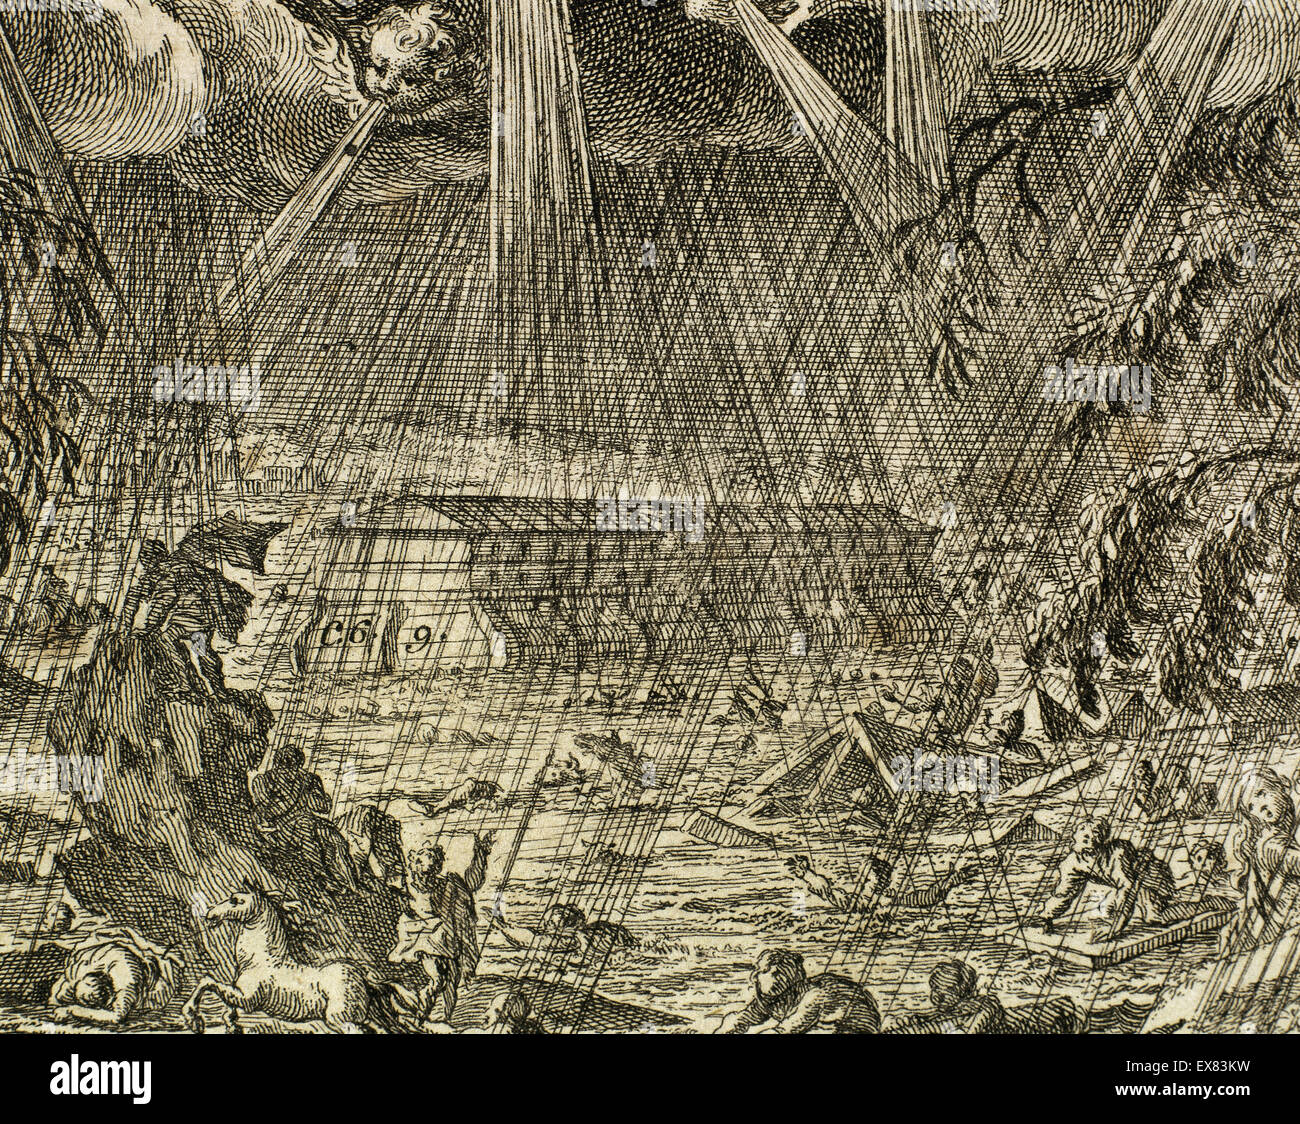 El Diluvio. Noah's Ark Libro del Génesis. Los Capítulos 6-9. Grabado. Foto de stock